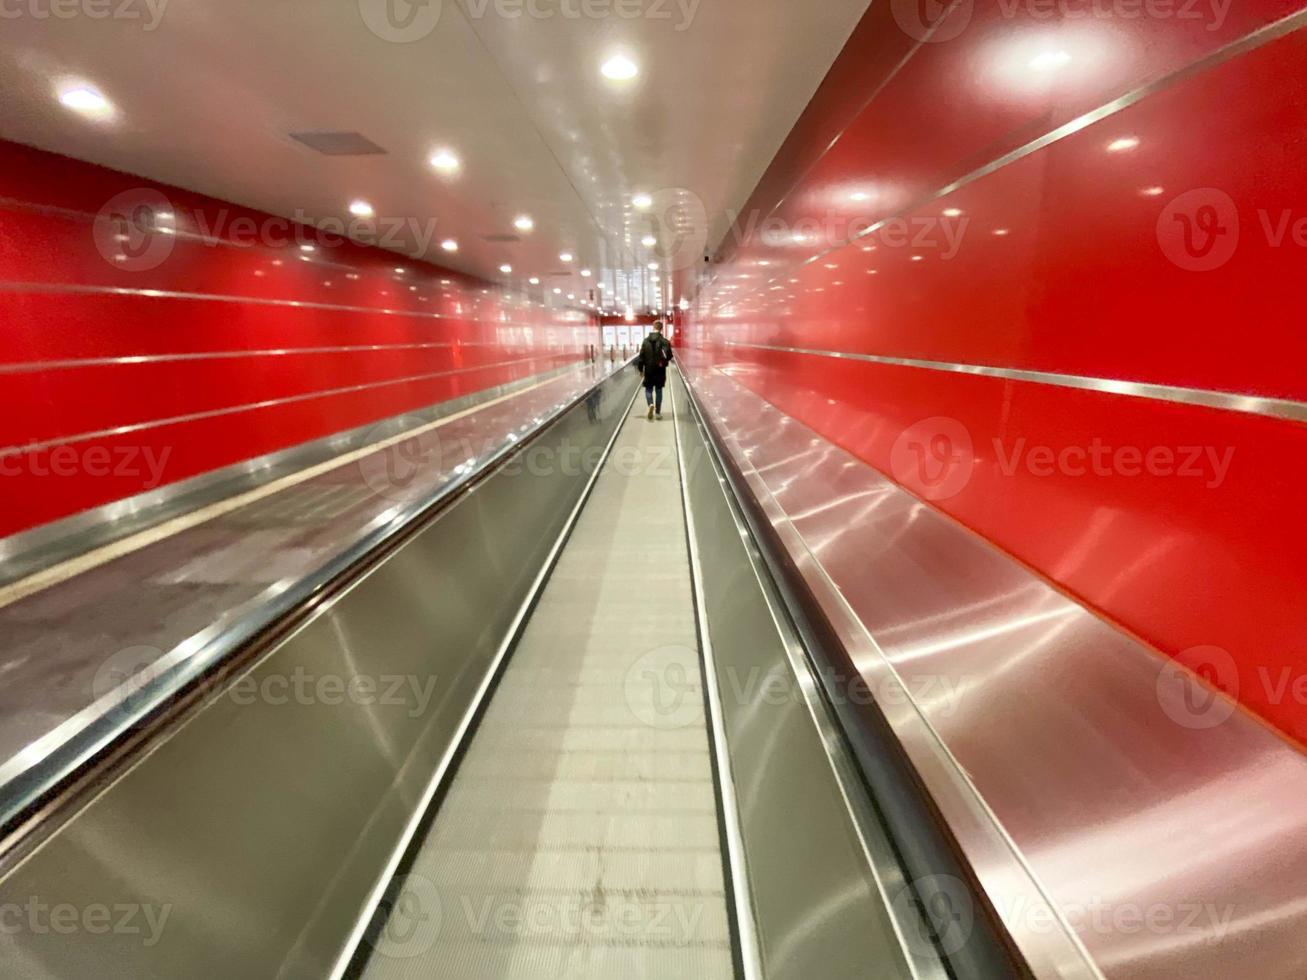 gran pasillo subterráneo rojo, moderno, largo y brillante entre estaciones de metro con andadores y escaleras mecánicas para el paso rápido de pasajeros foto